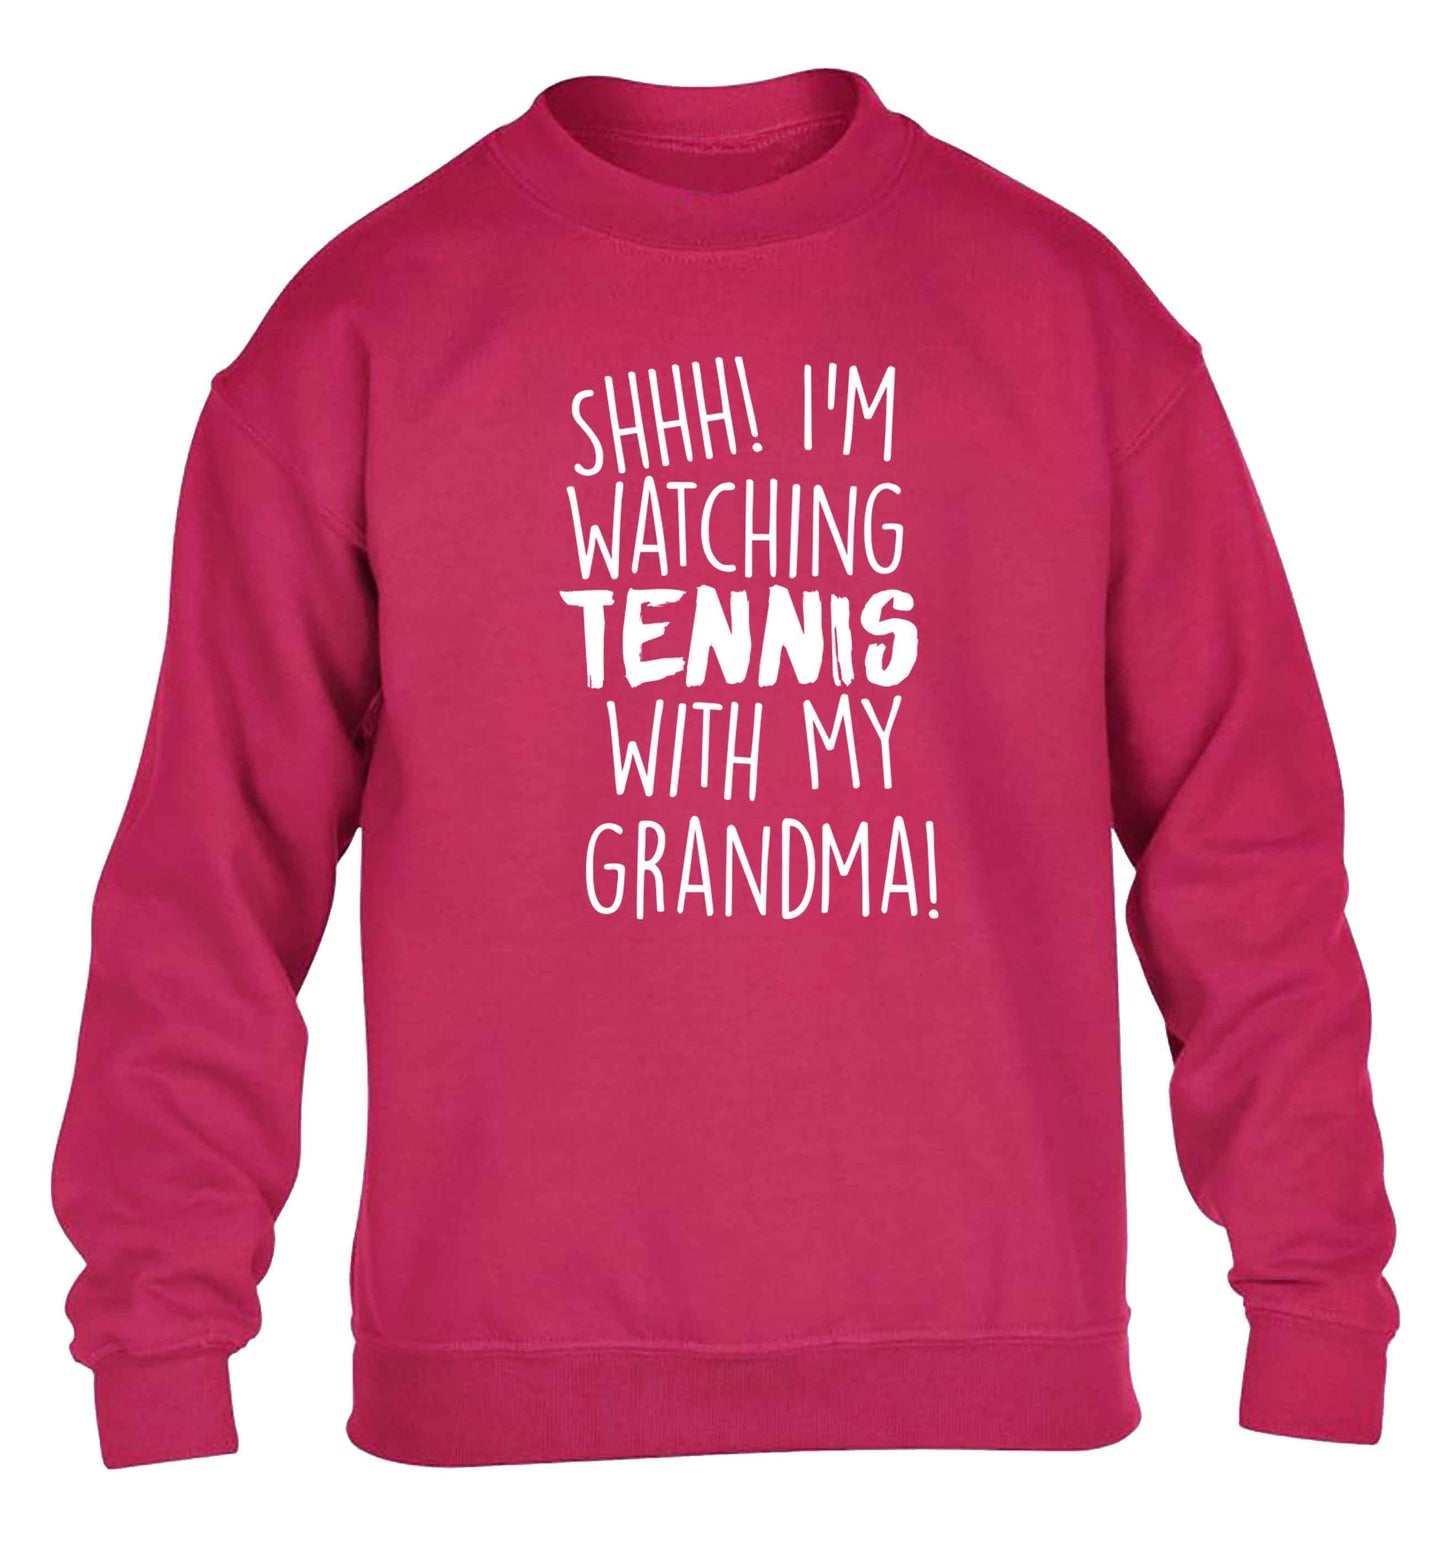 Shh! I'm watching tennis with my grandma! children's pink sweater 12-13 Years